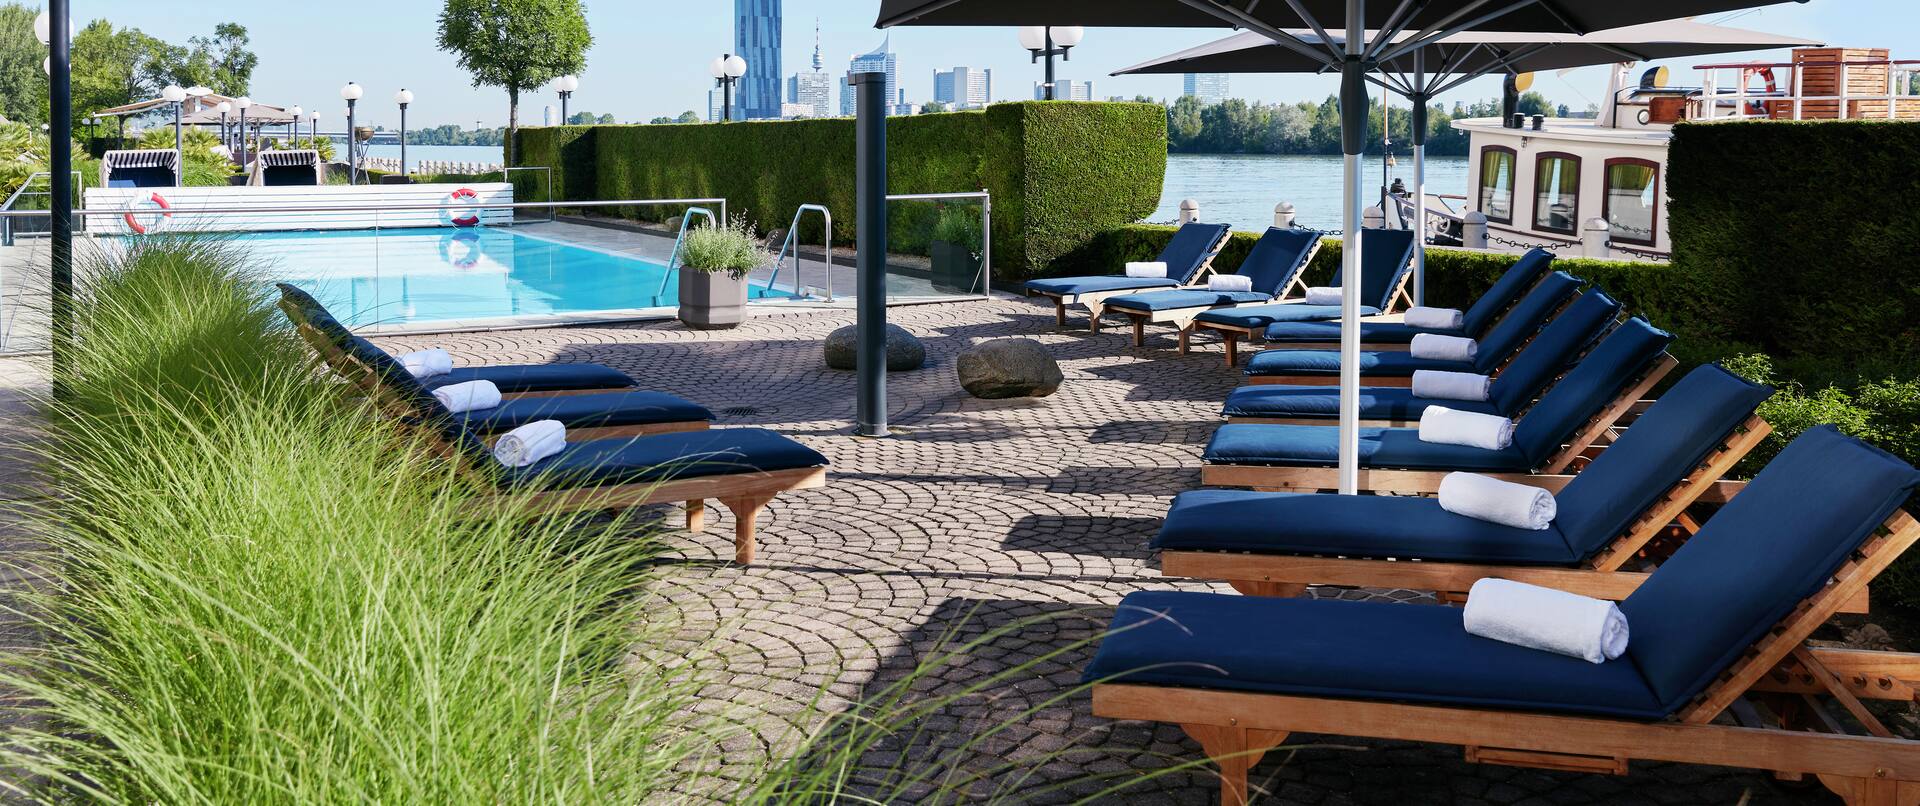 Pool im Freien mit Liegestühlen und großen Sonnenschirmen